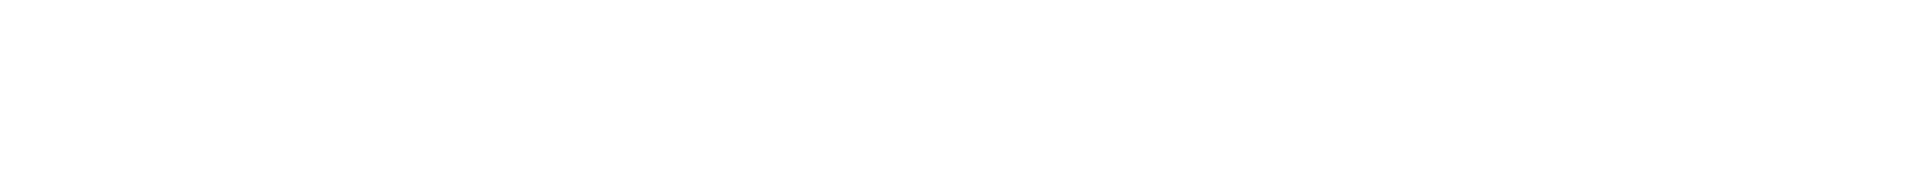 avvale-logo-pattern-fade